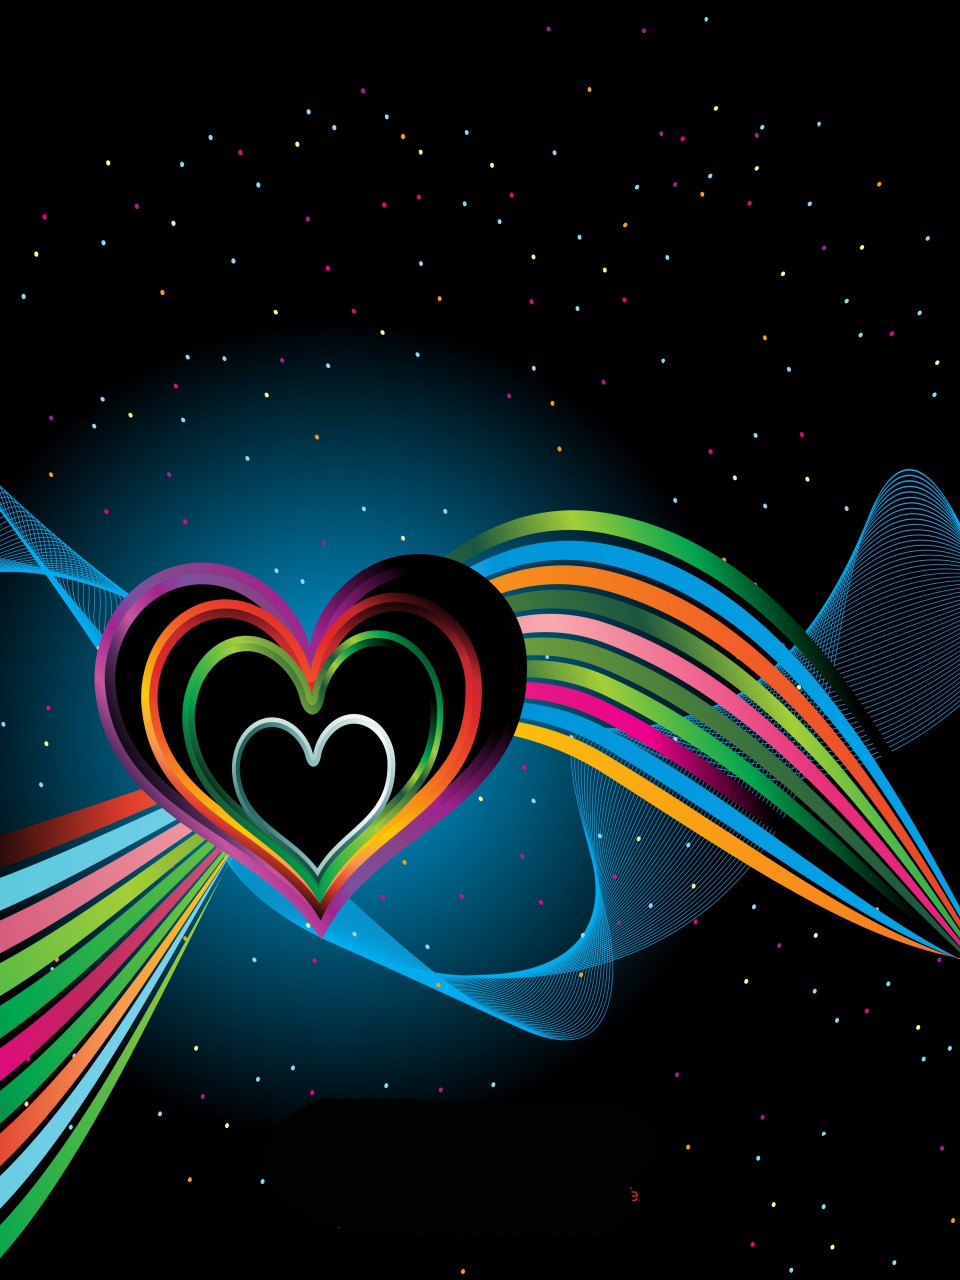 Colorful Hearts On Black Background Elsoar